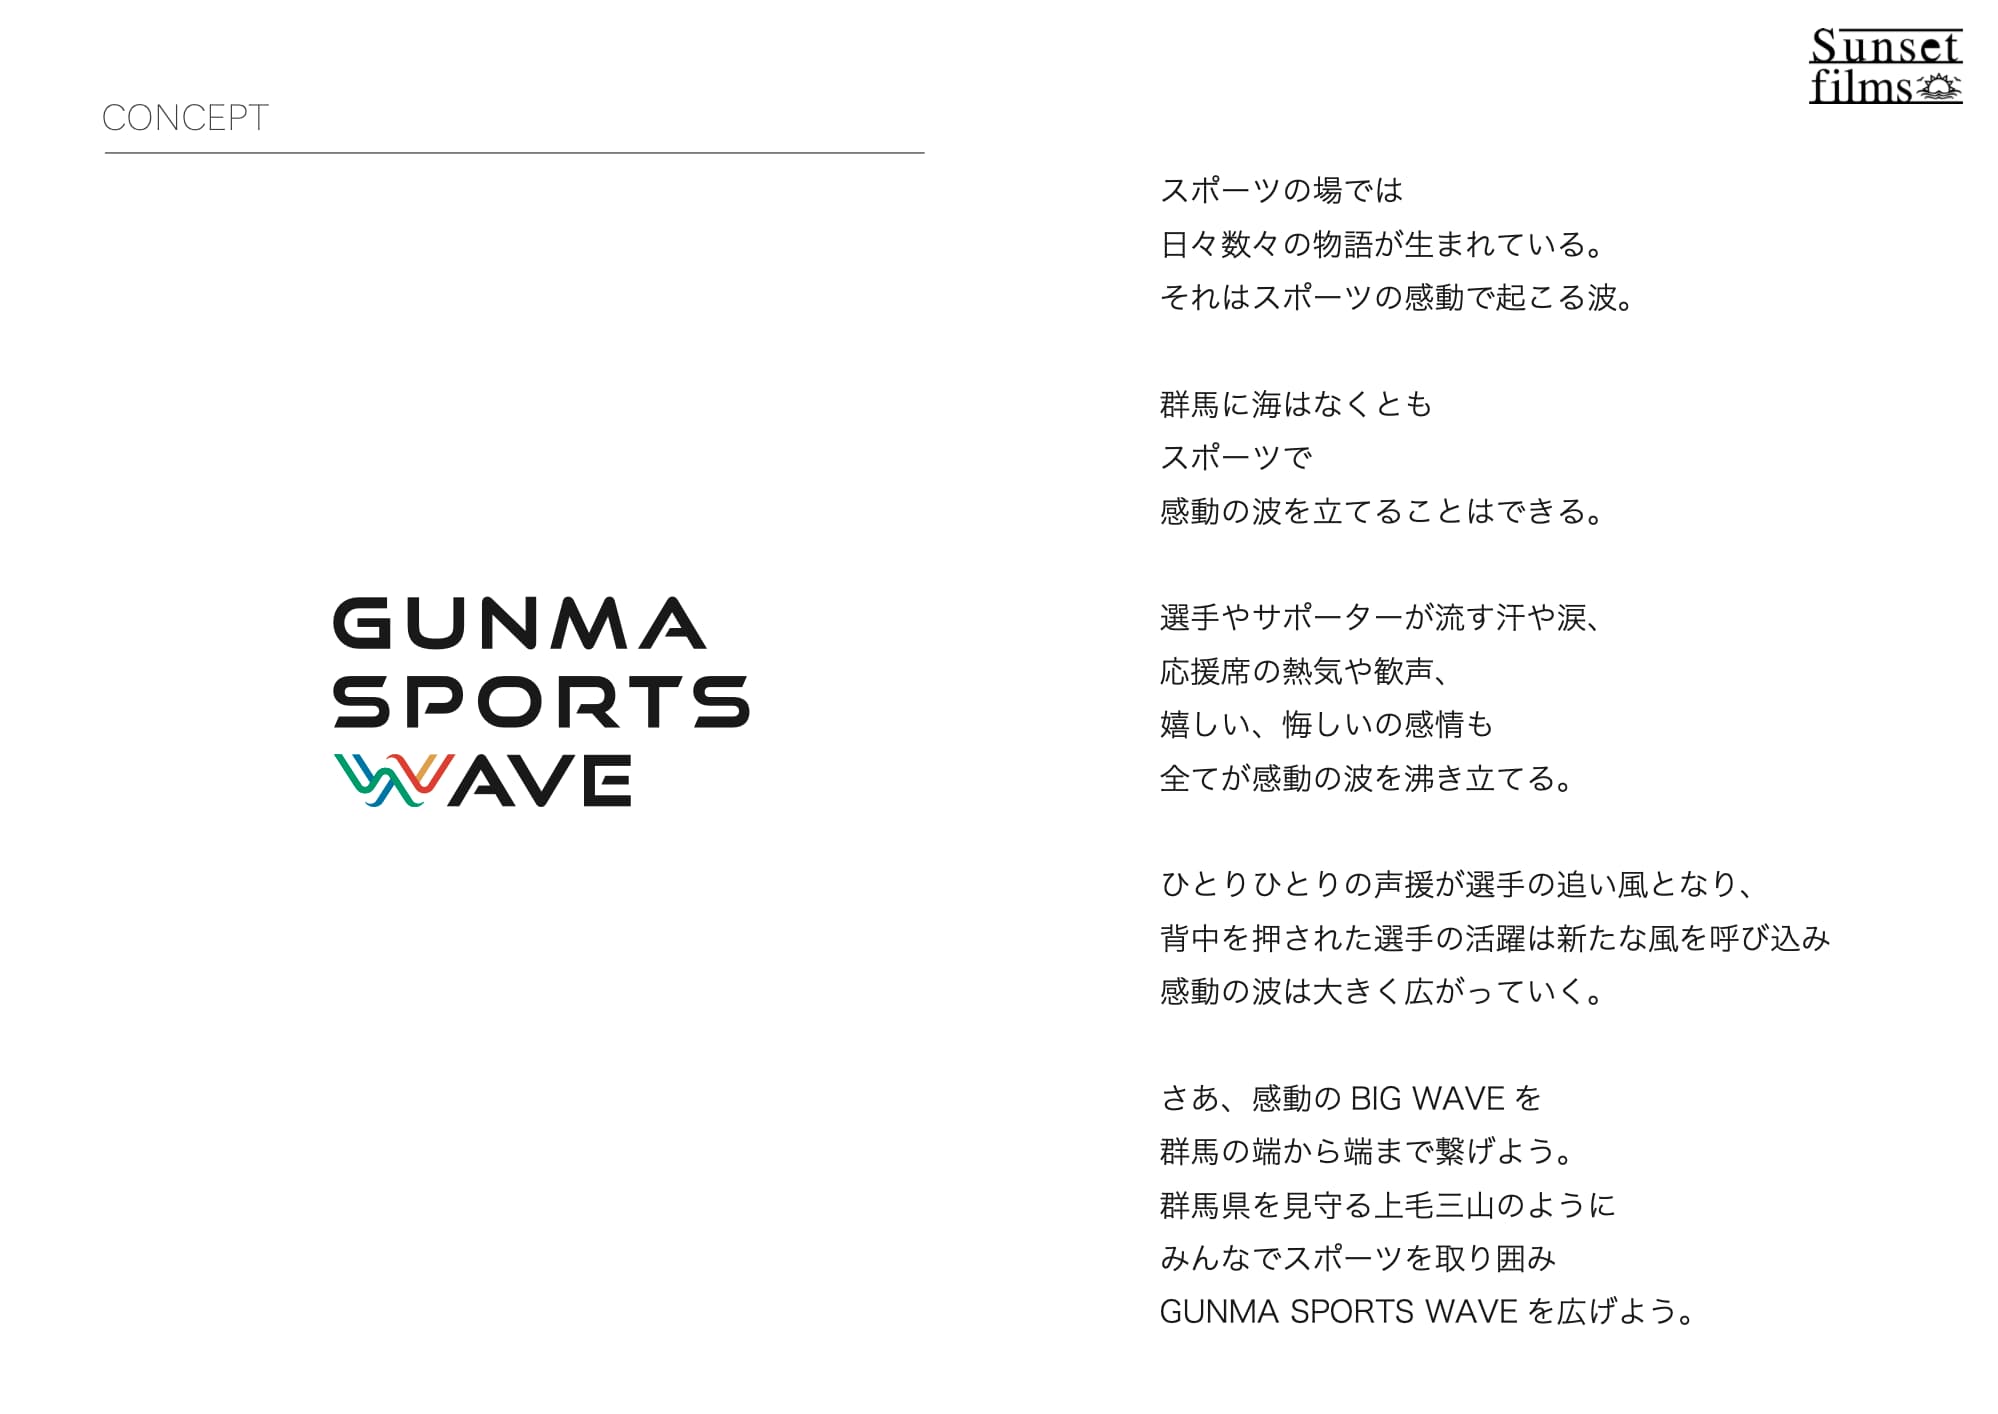 サムネイル: 群馬県【GUNMA SPORTS WAVE】